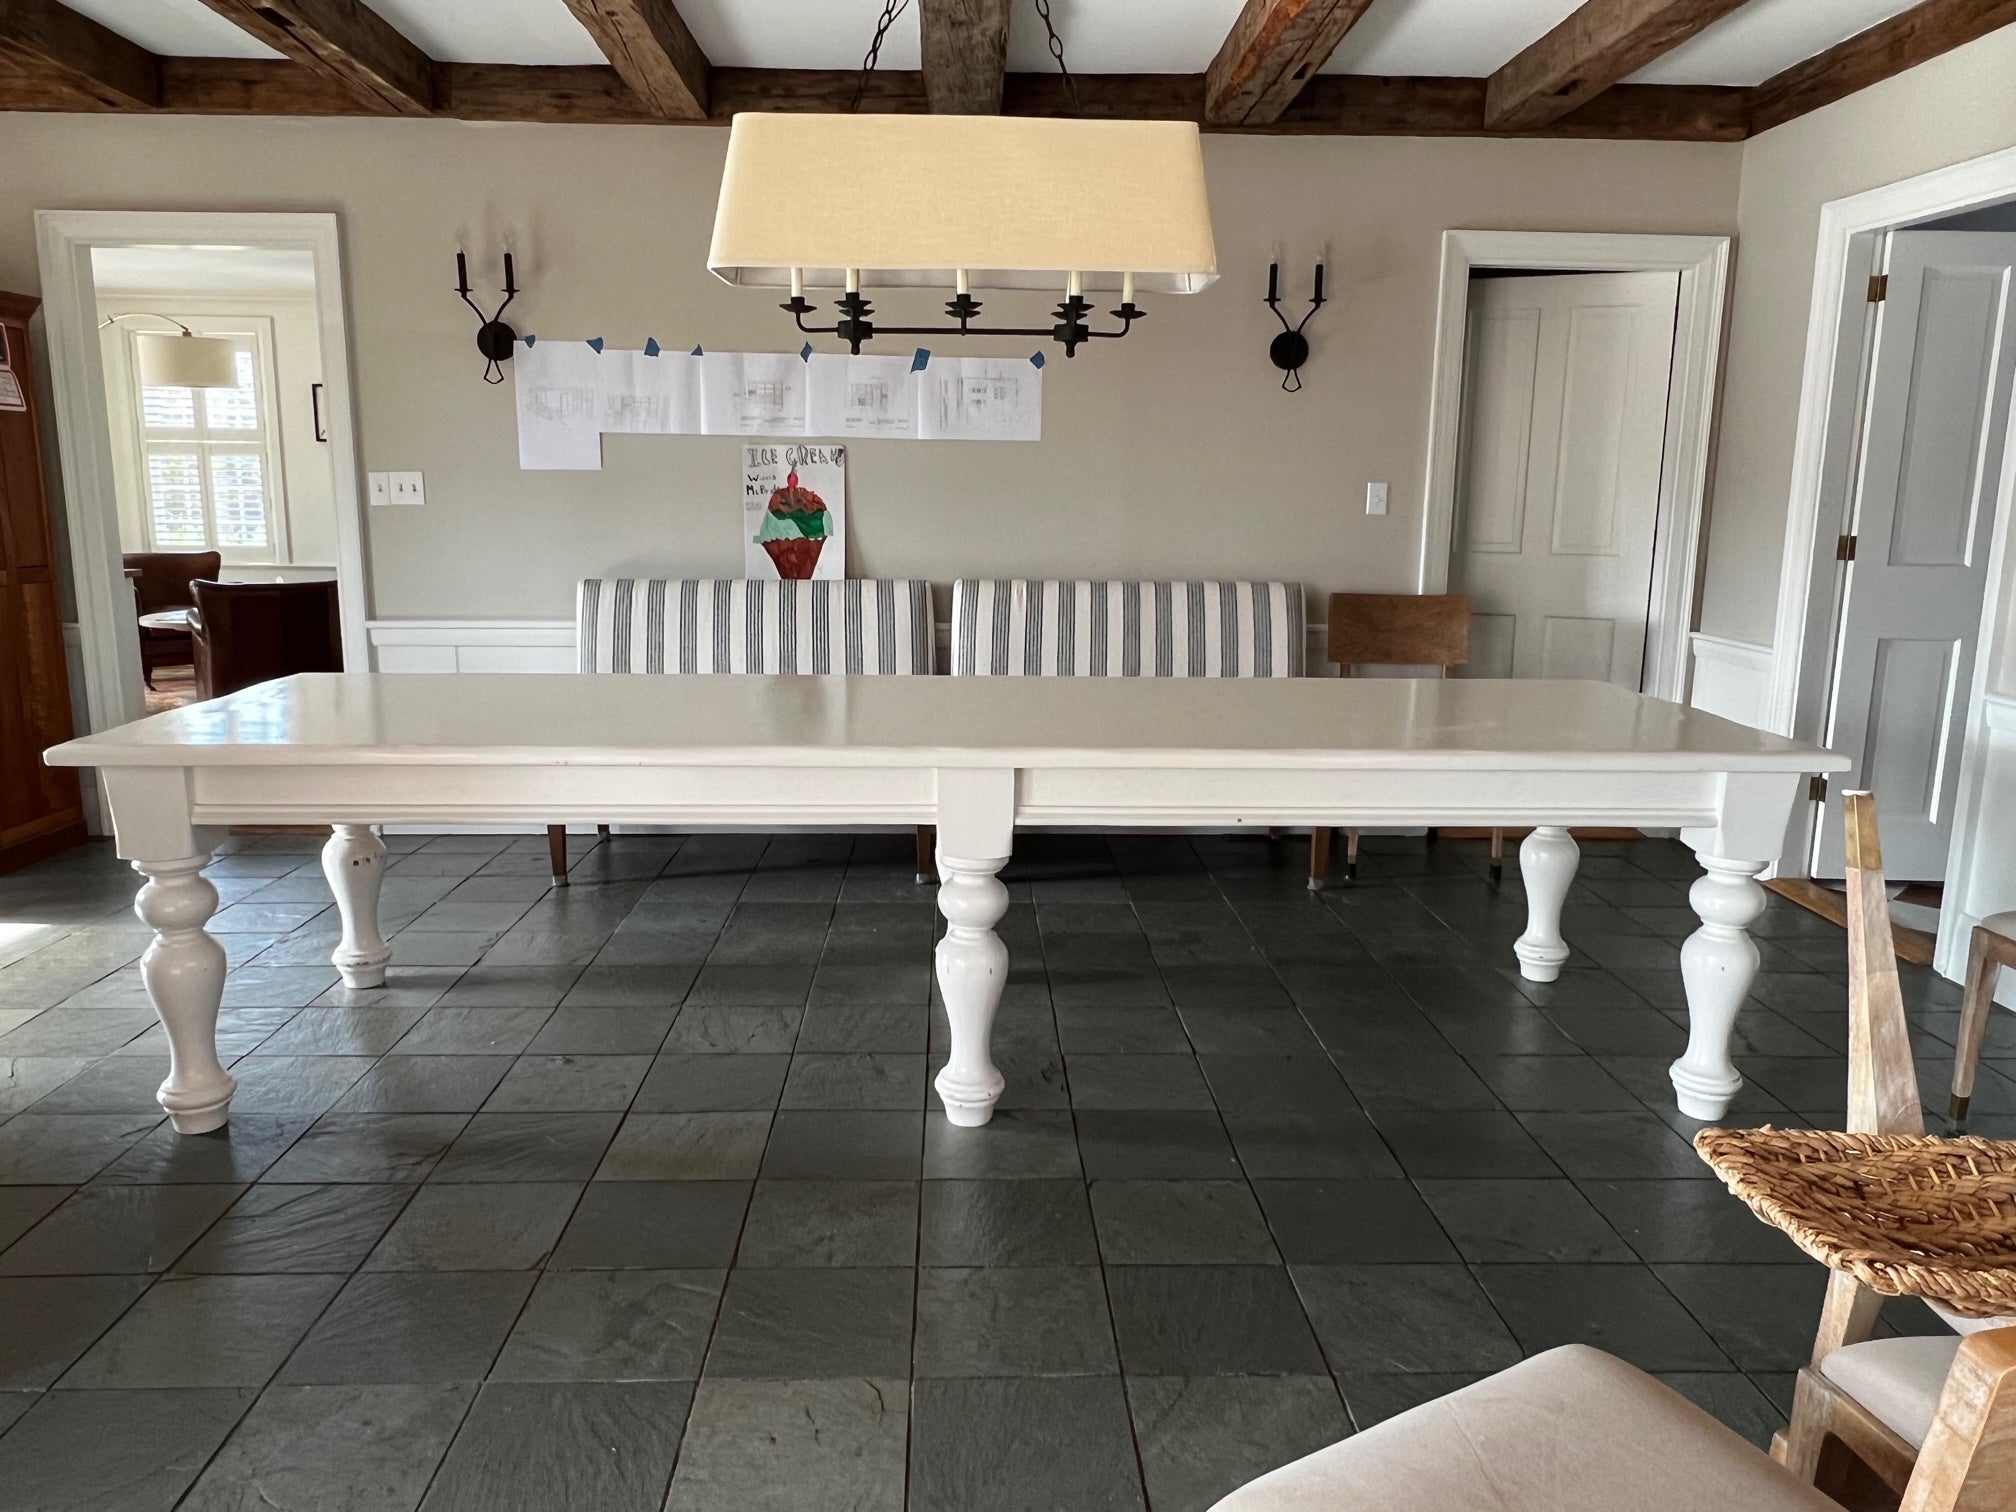 Monumentale table de récolte en pin de première qualité de style campagne française par PJ Milligan, Santa Barbara, ayant une longueur spacieuse de 11 pieds et une belle finition peinte en blanc. Le plateau épais est soutenu par des pieds tournés.  